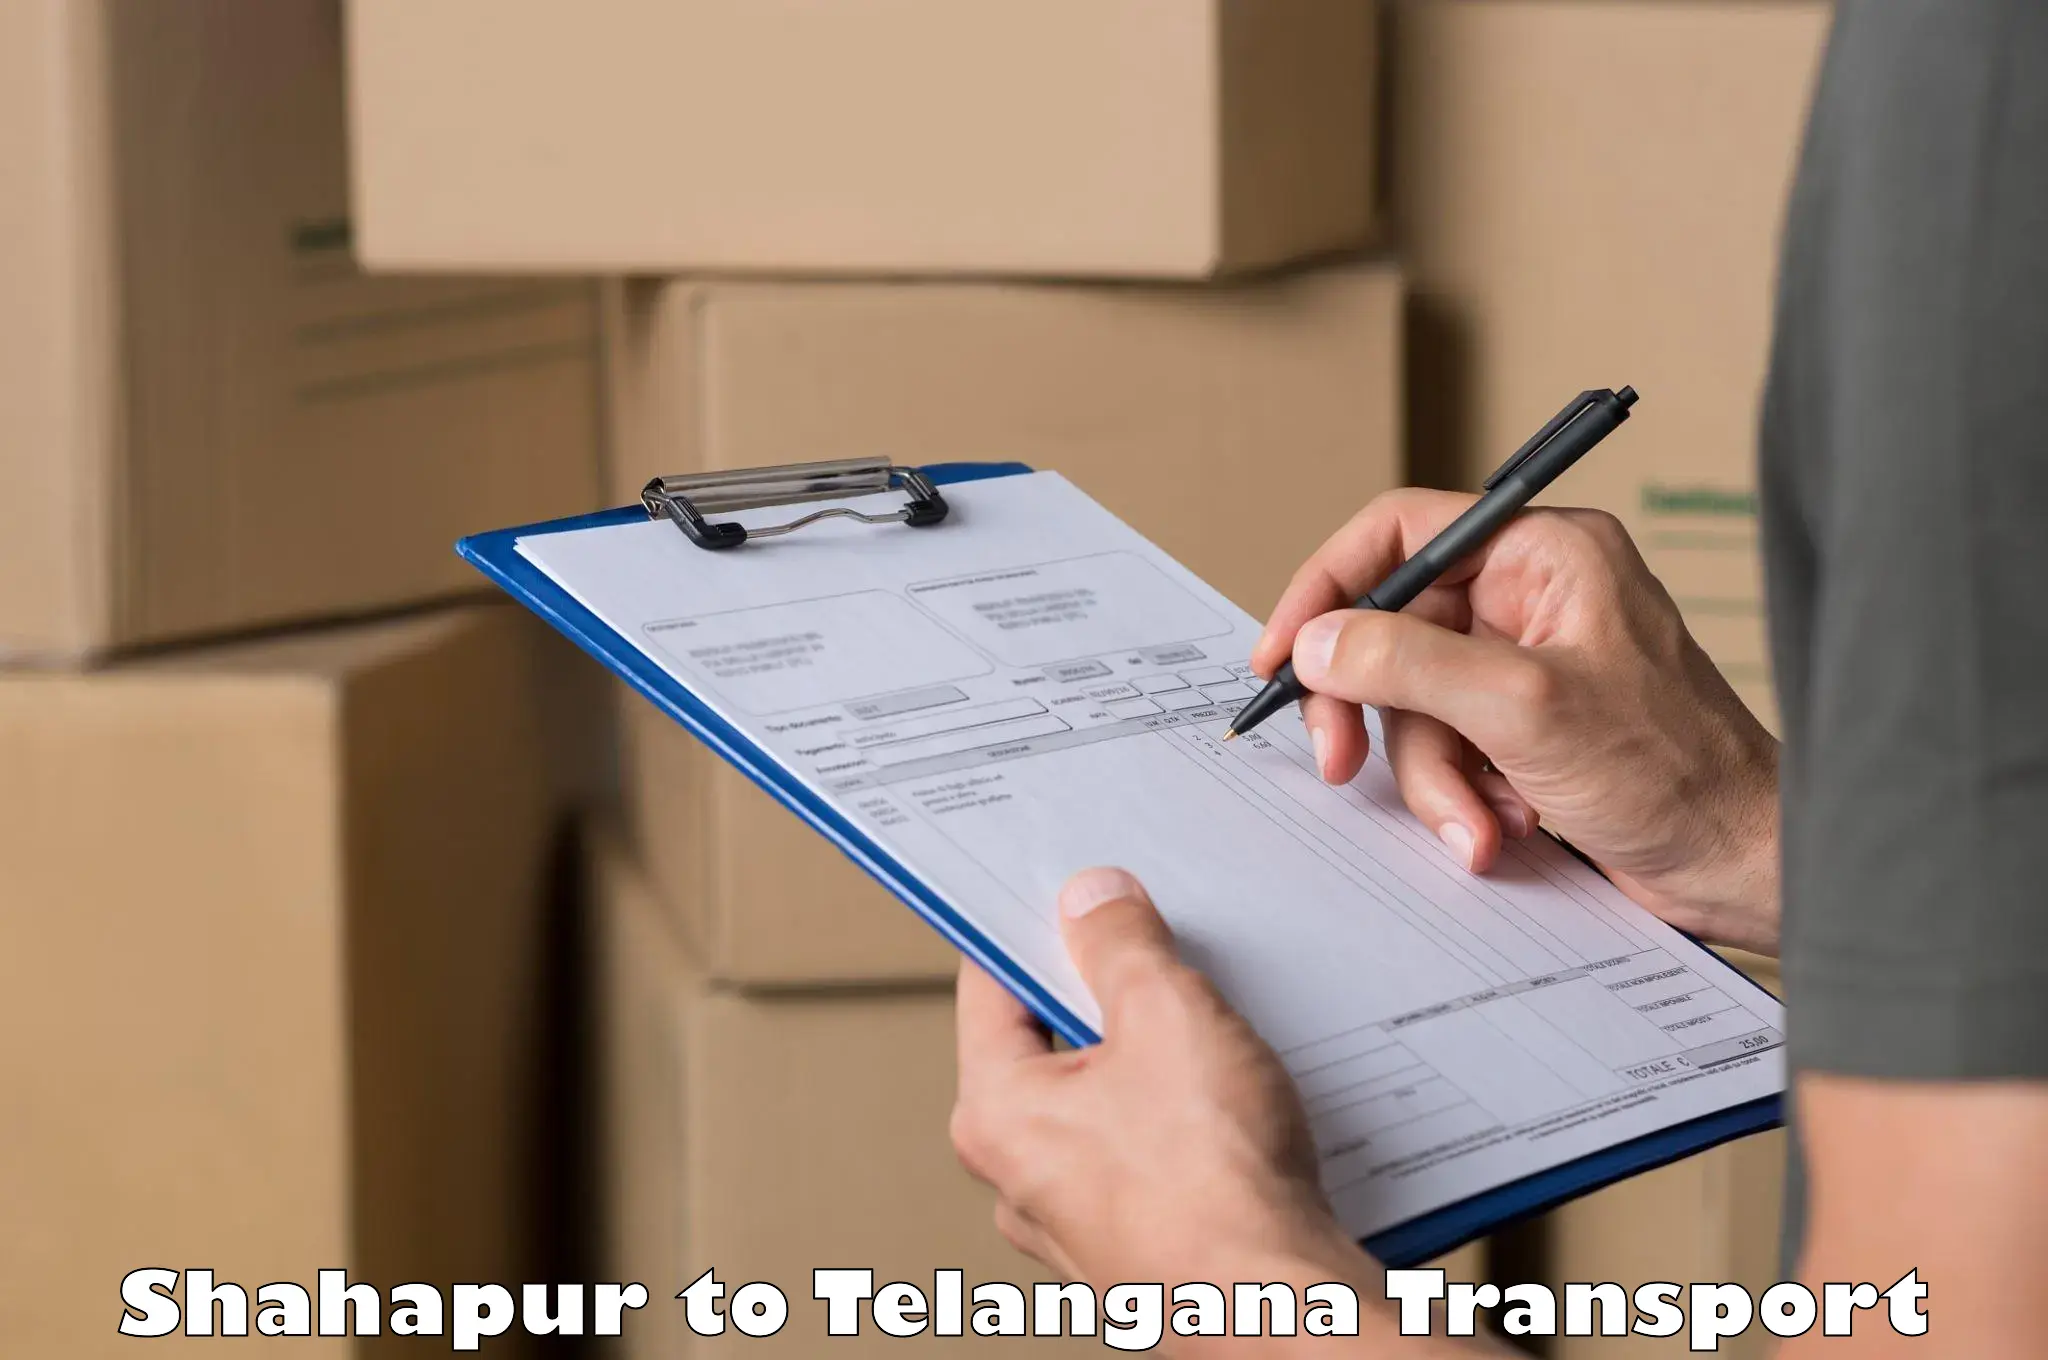 Truck transport companies in India Shahapur to Yacharam